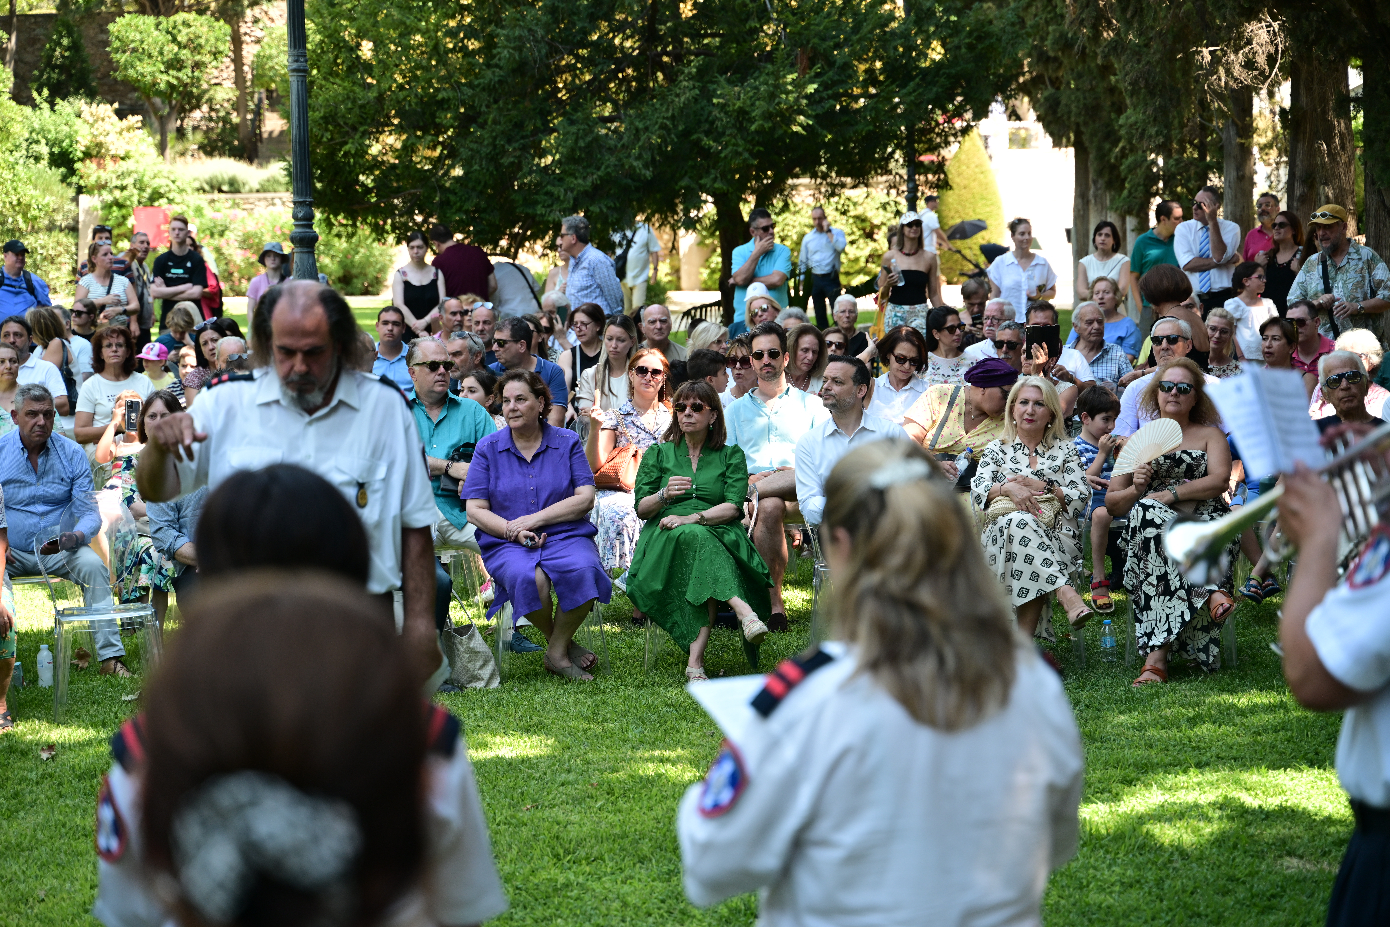 Με μεγάλη συμμετοχή πολιτών ξεκίνησαν οι επετειακές εκδηλώσεις στον κήπο του Προεδρικού Μεγάρου για τα 50 χρόνια από την αποκατάσταση της Δημοκρατίας